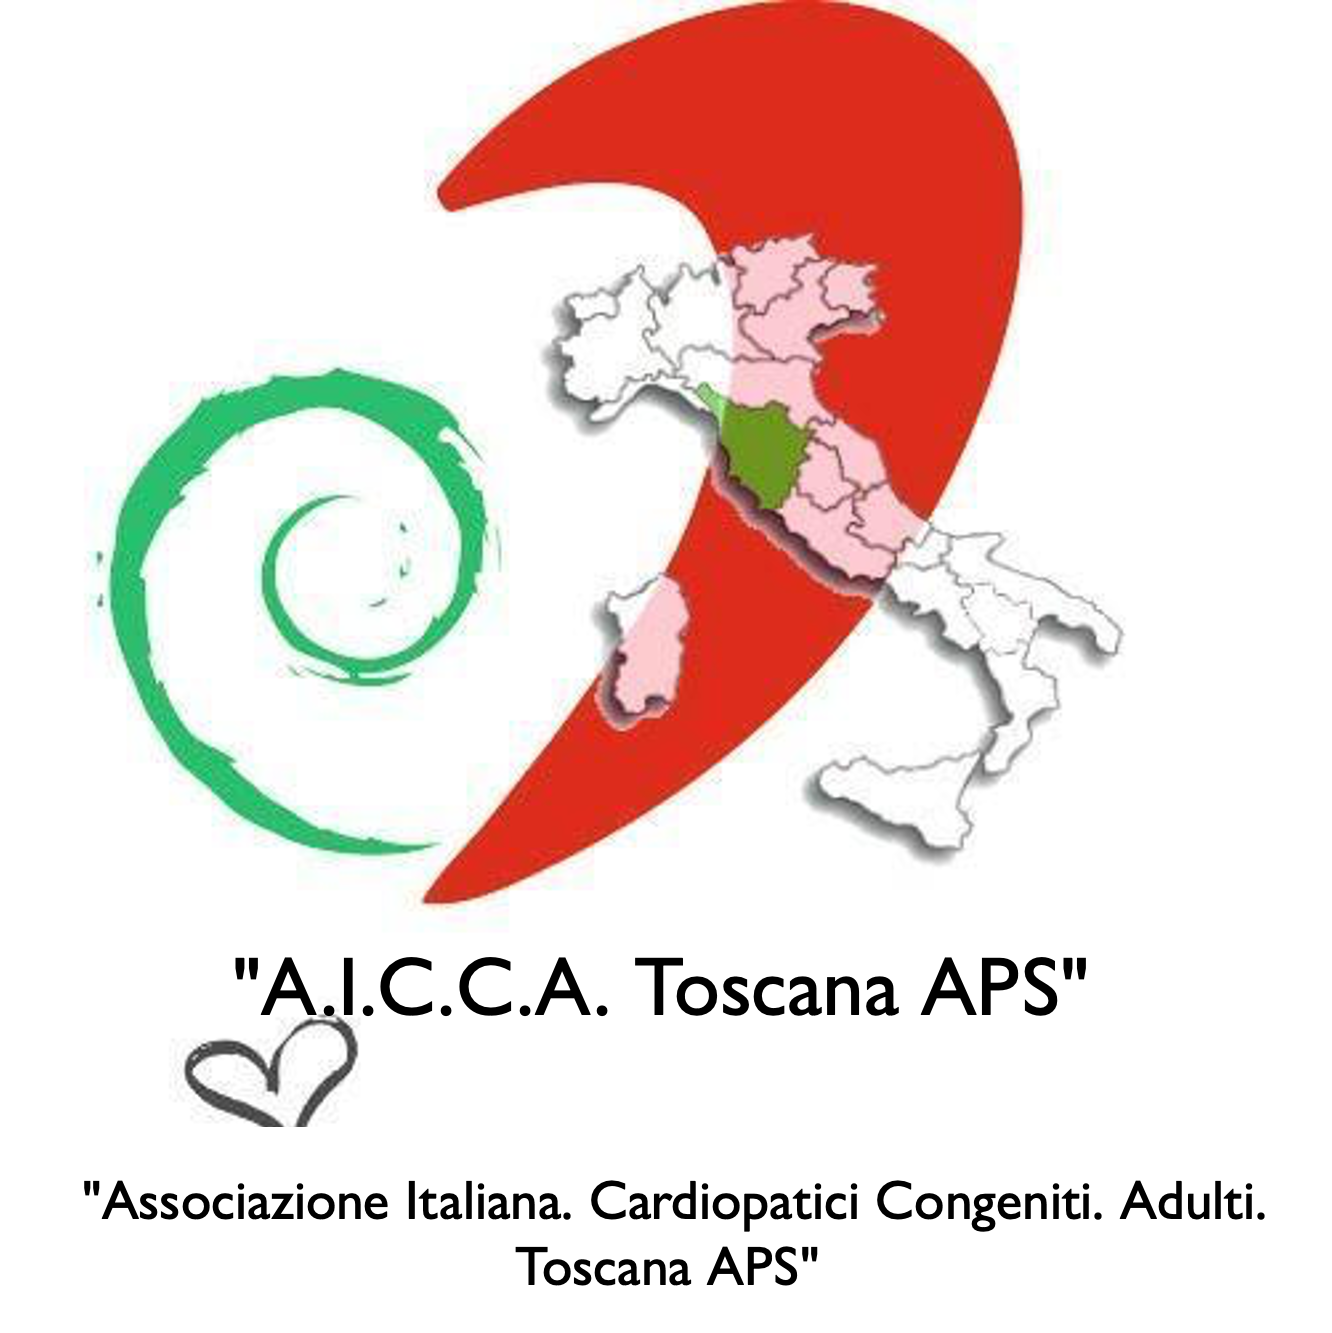  A.I.C.C.A. Toscana APS